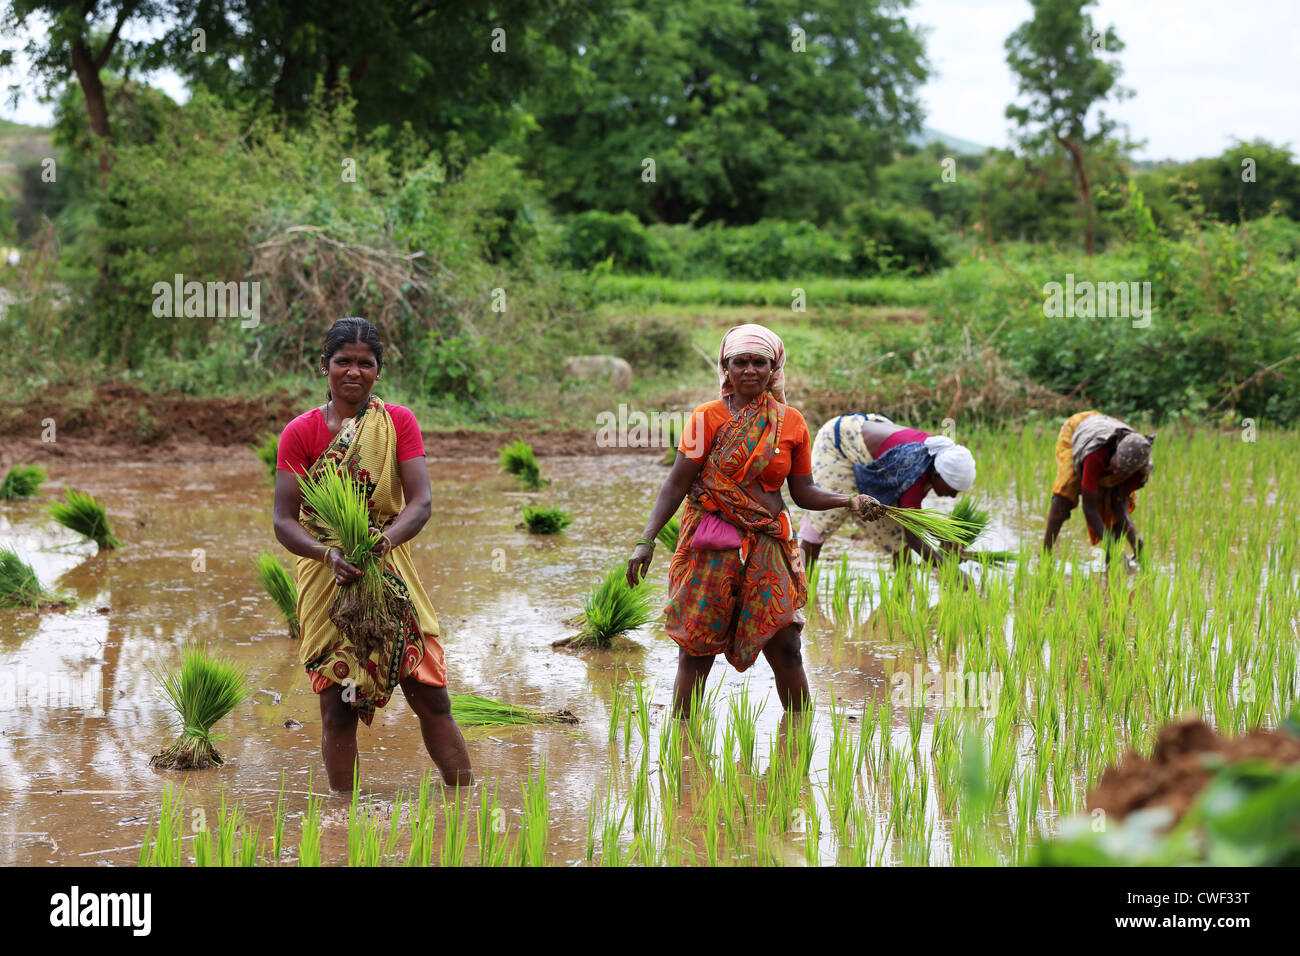 Femme de l'Inde rurale travaillant dans une rizière Andhra Pradesh Inde du Sud Banque D'Images